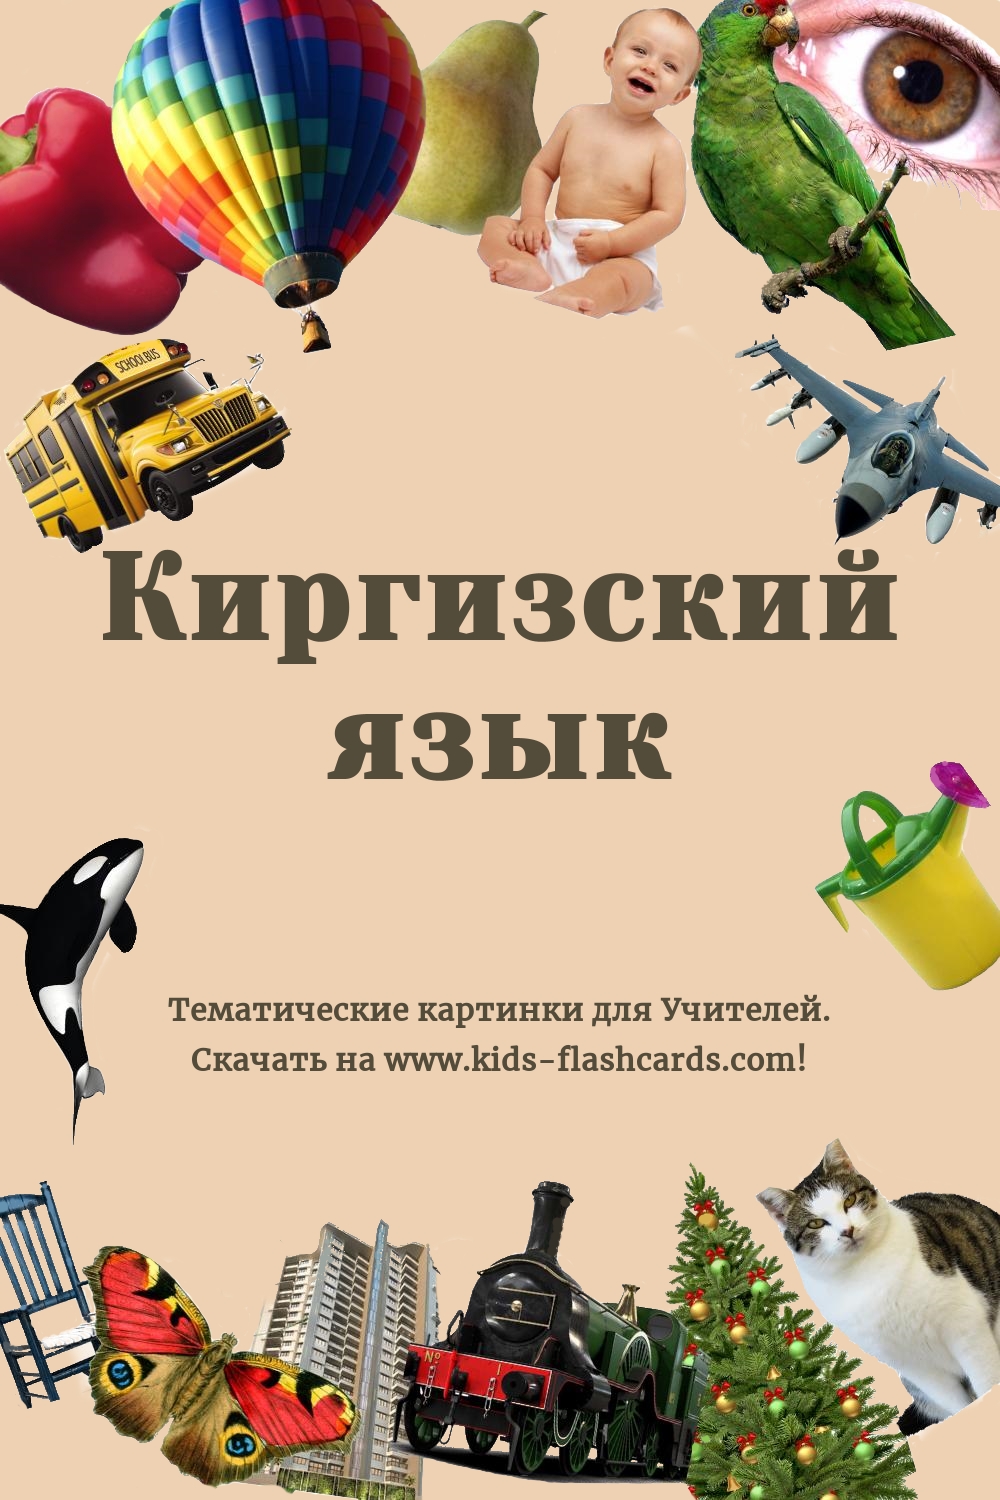 Киргизский язык - бесплатные материалы для печати